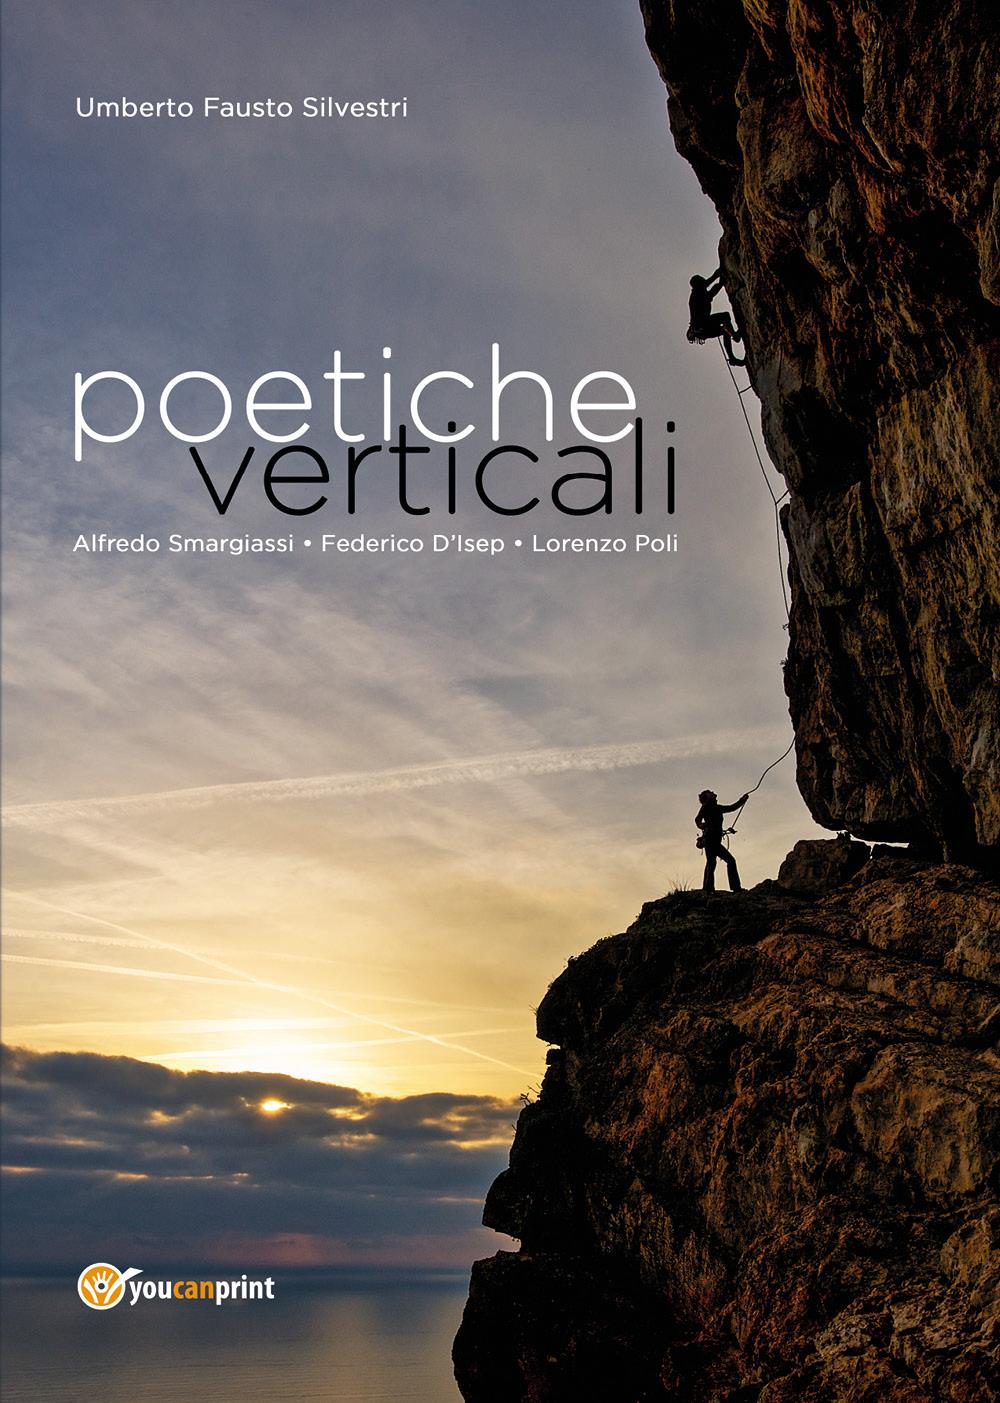 Poetiche verticali. L’arrampicata sportiva tra immagini e poesie